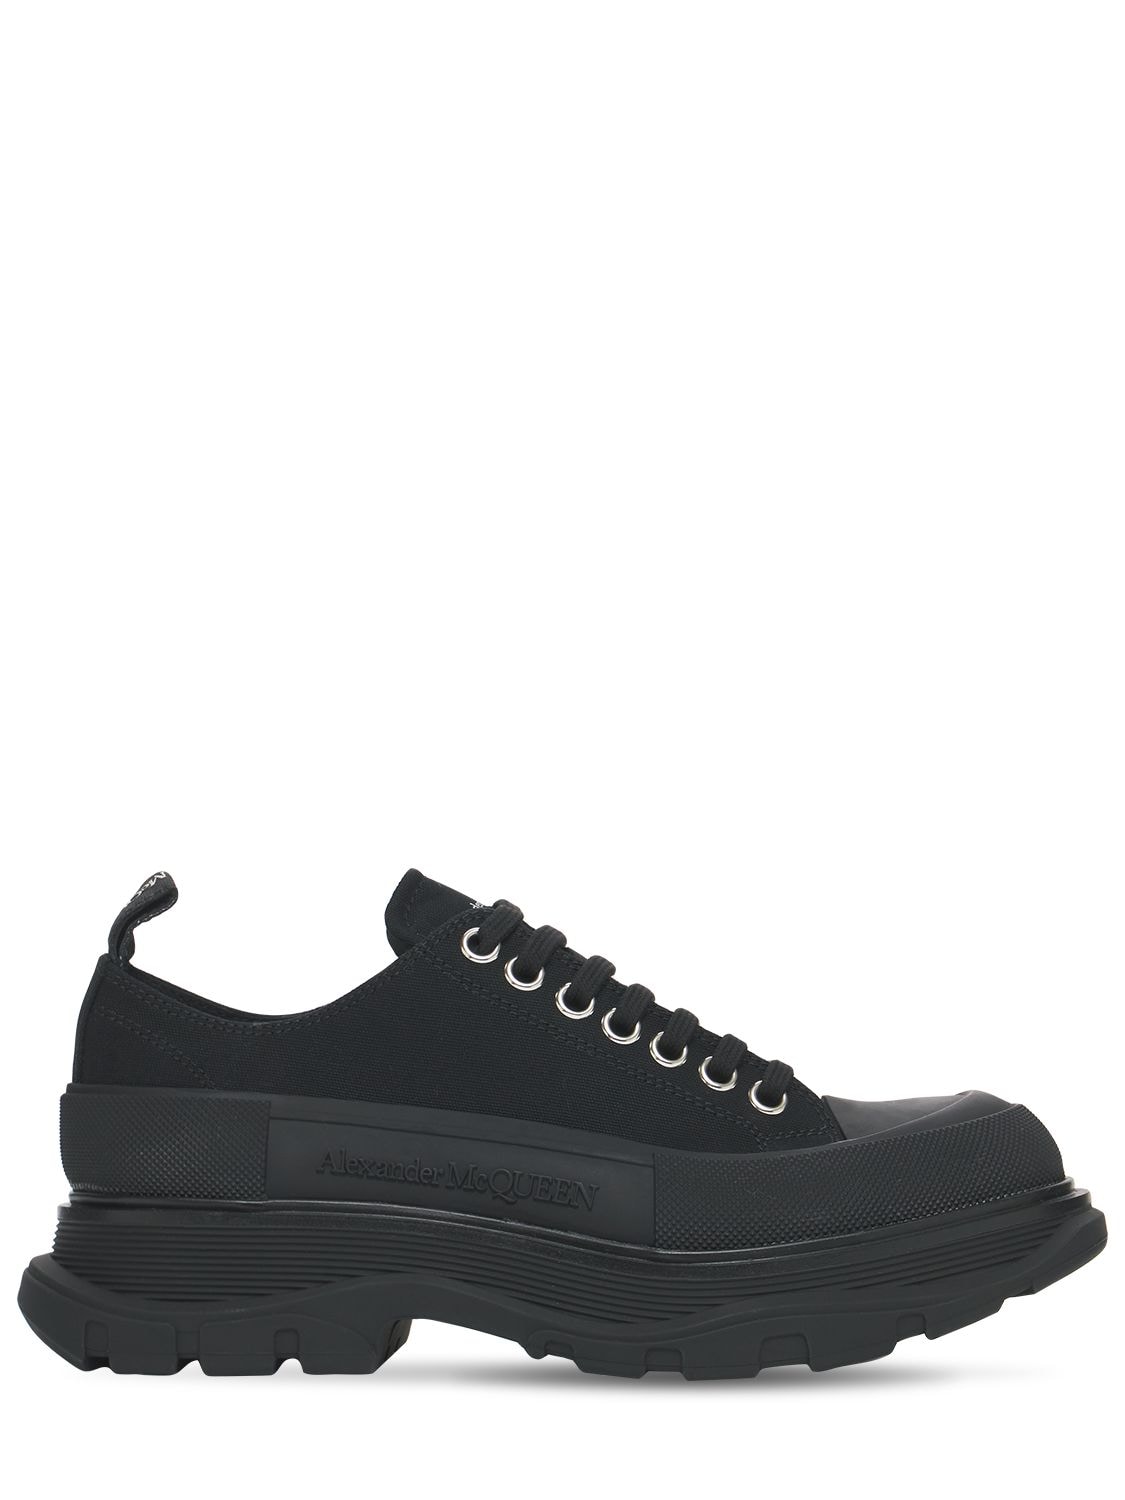 Alexander Mcqueen 45mm Tread Slick Cotton Canvas Sneakers In Black